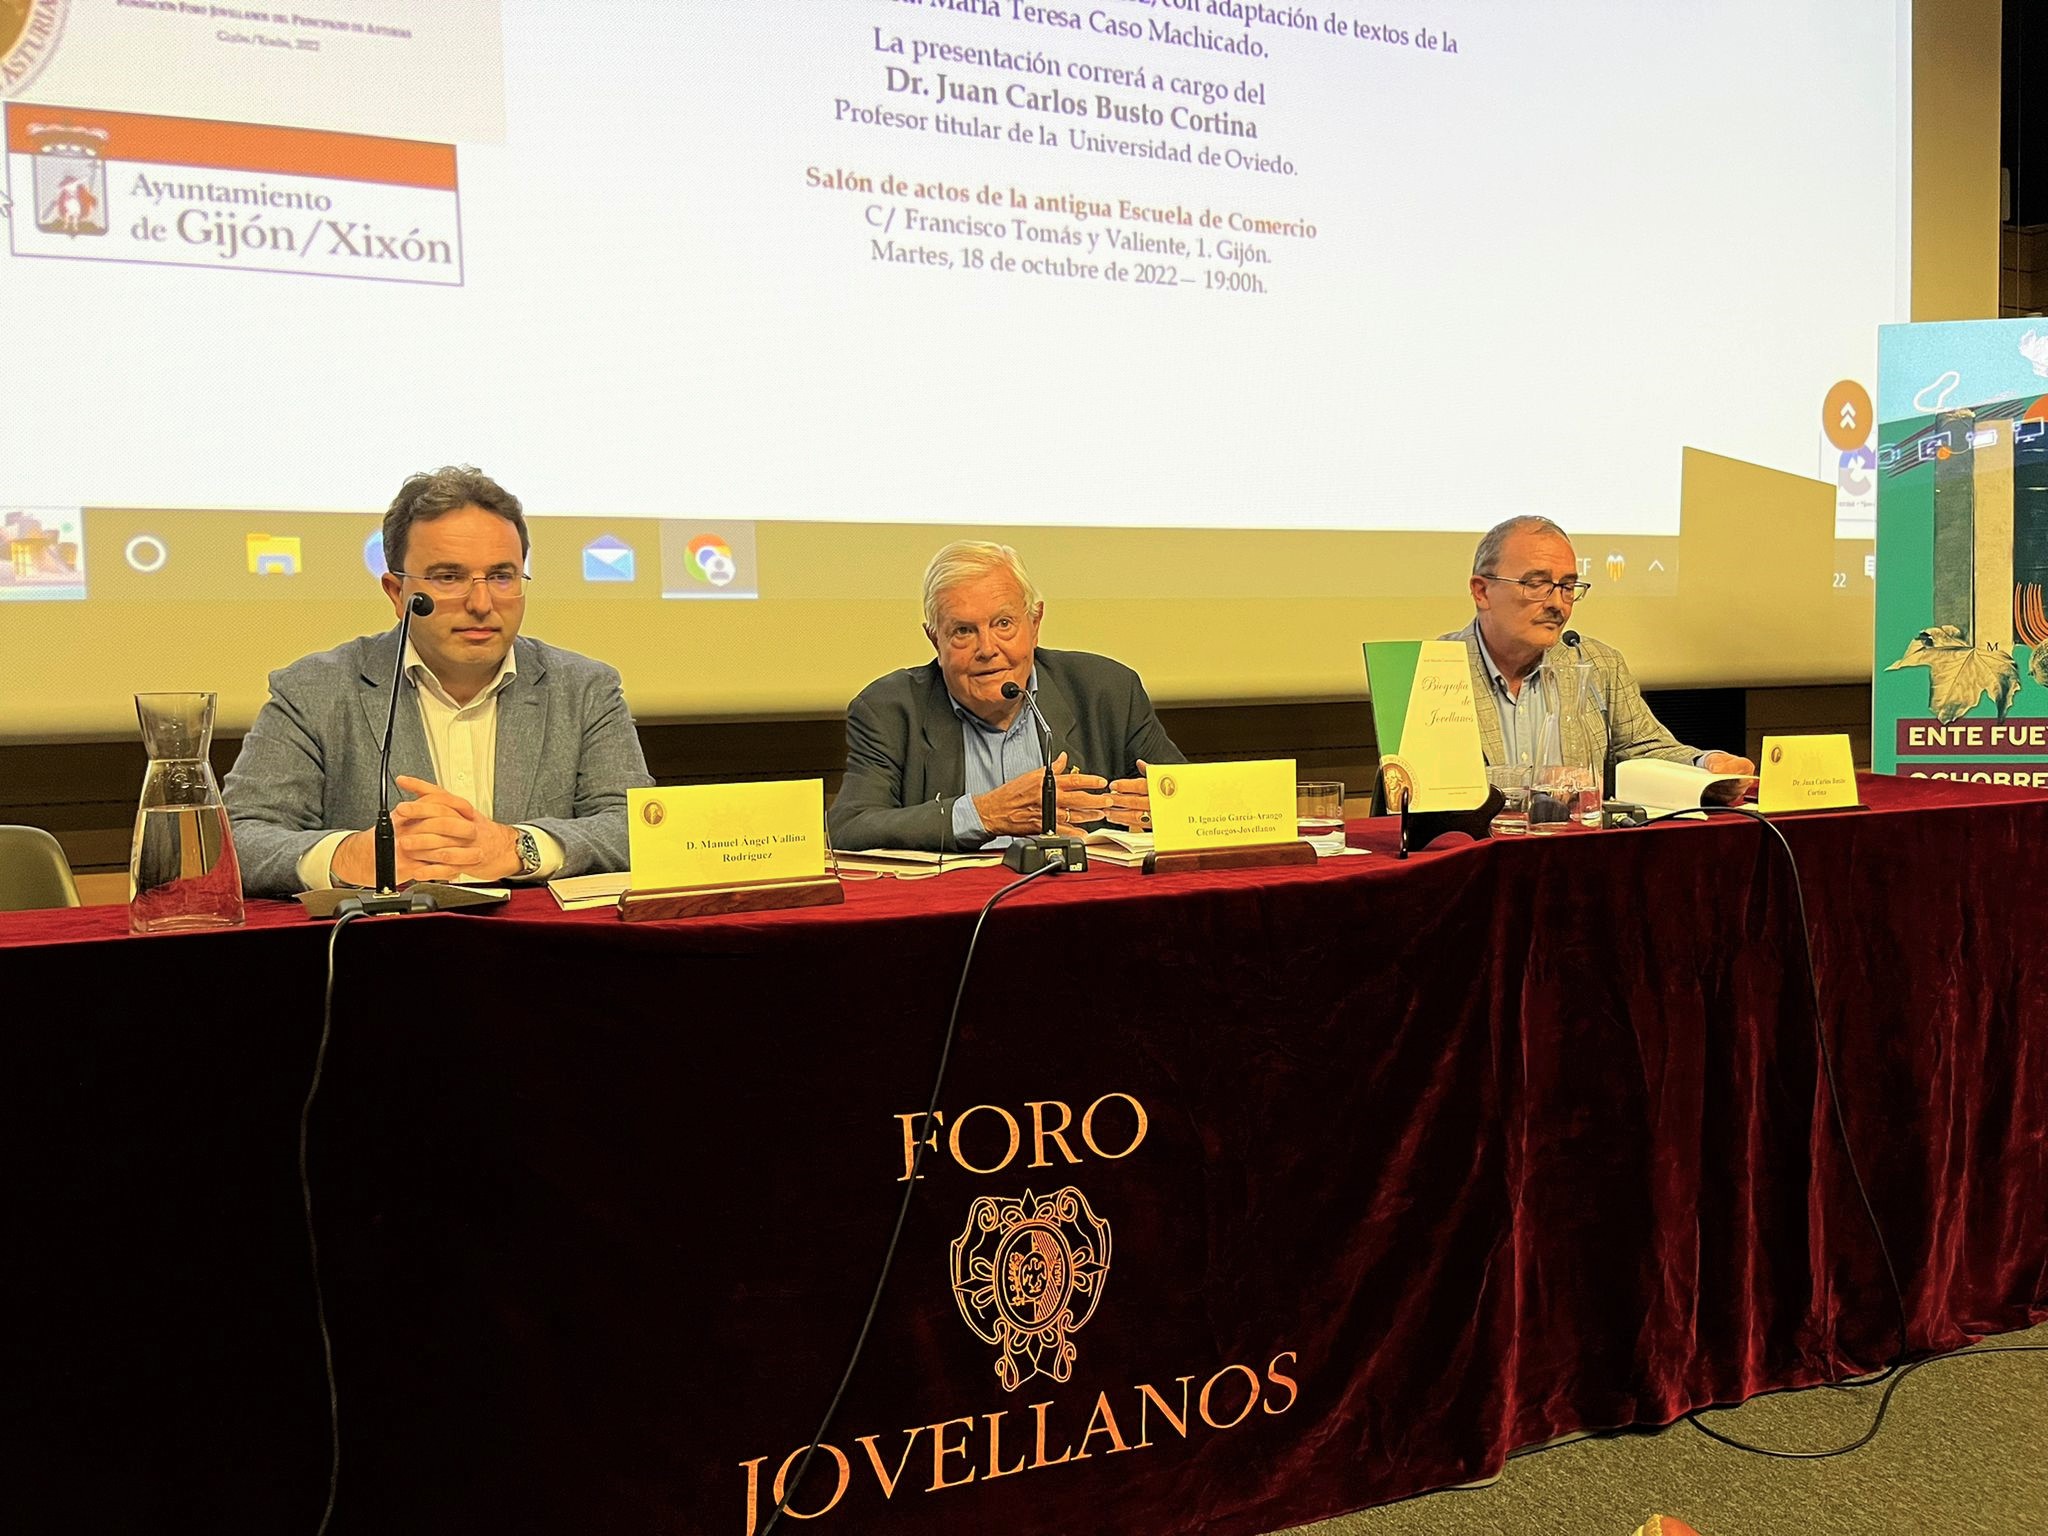 Biografía de Jovellanos en asturiano. Presentación